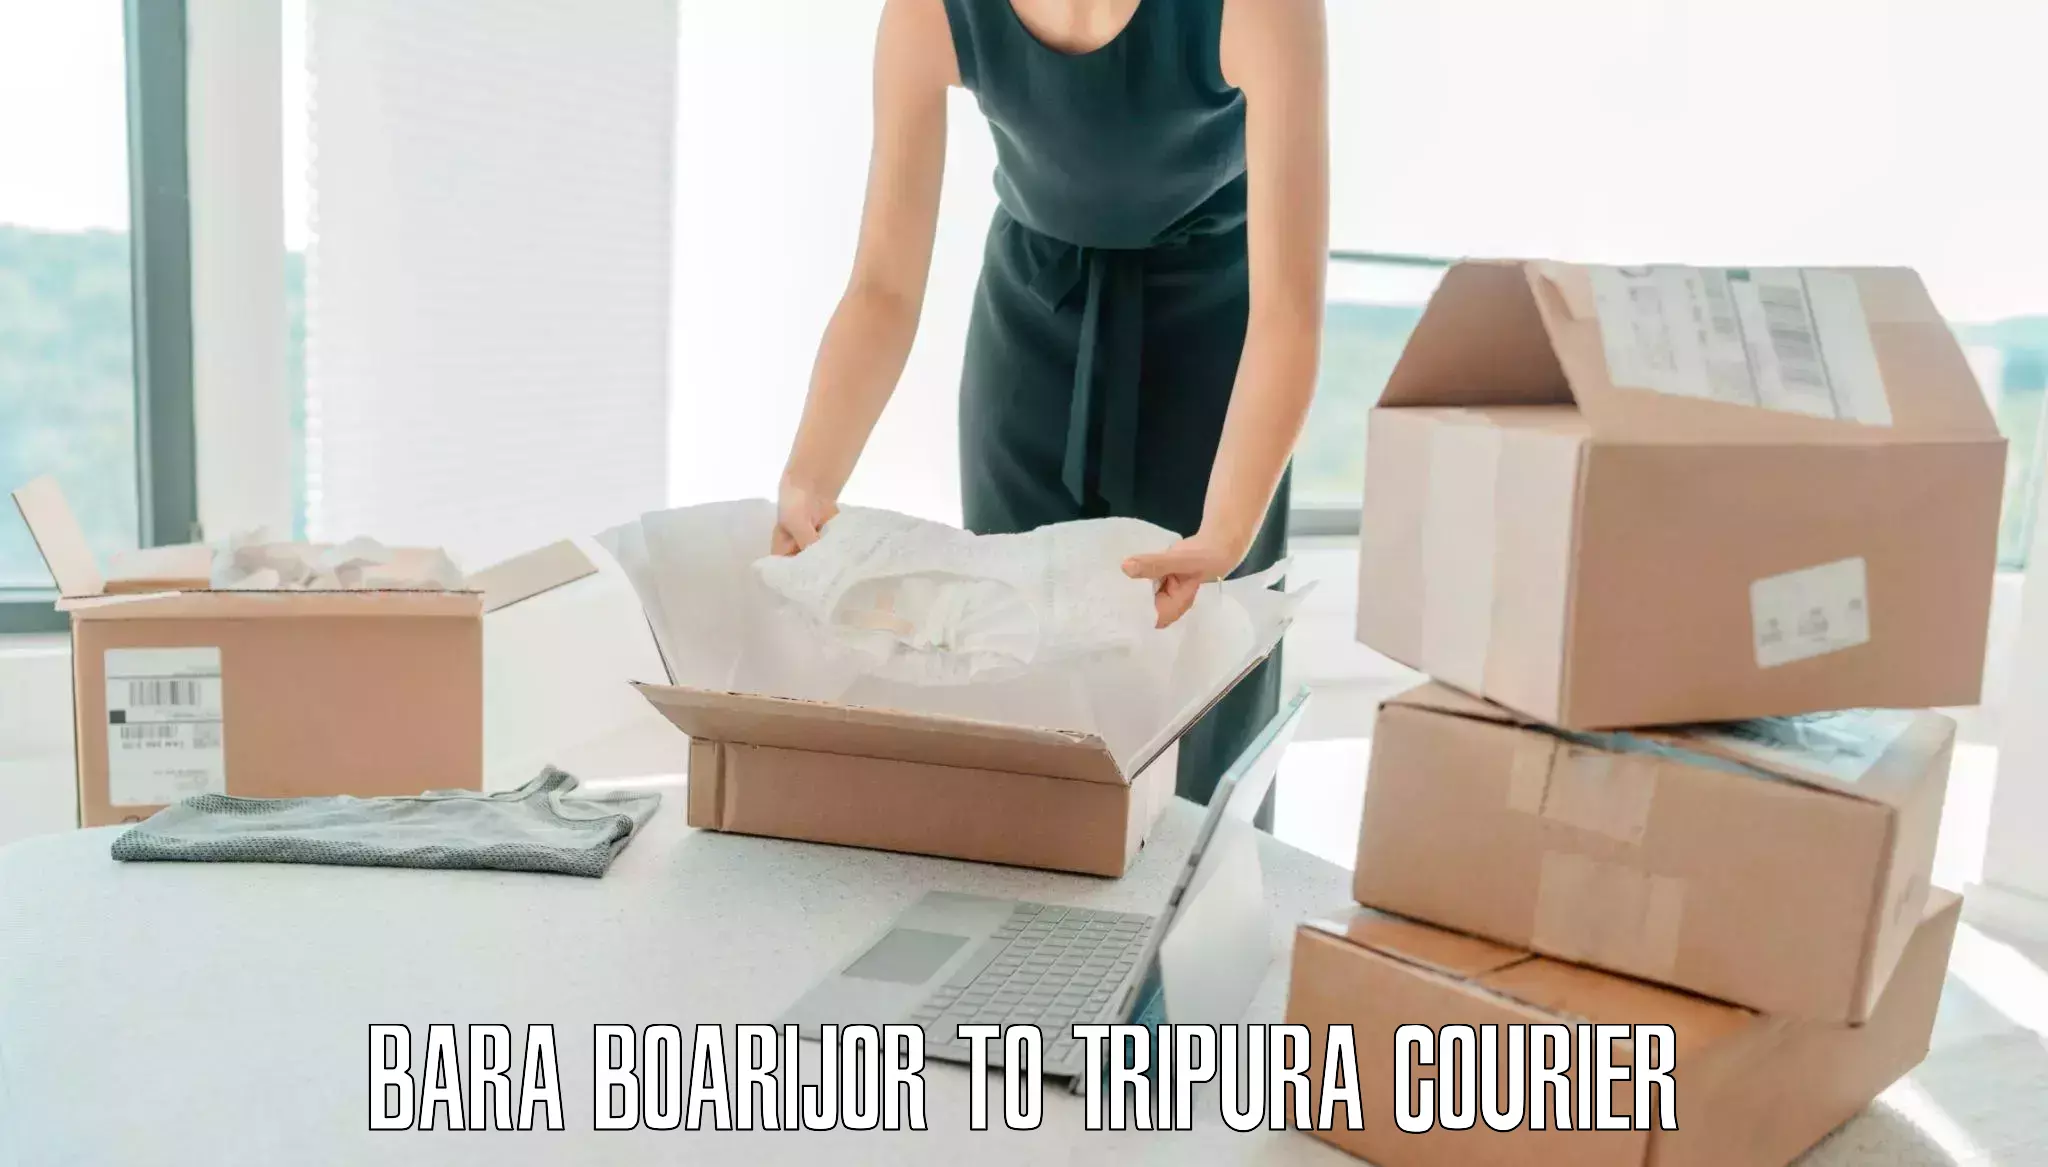 Baggage courier solutions Bara Boarijor to Manu Bazar